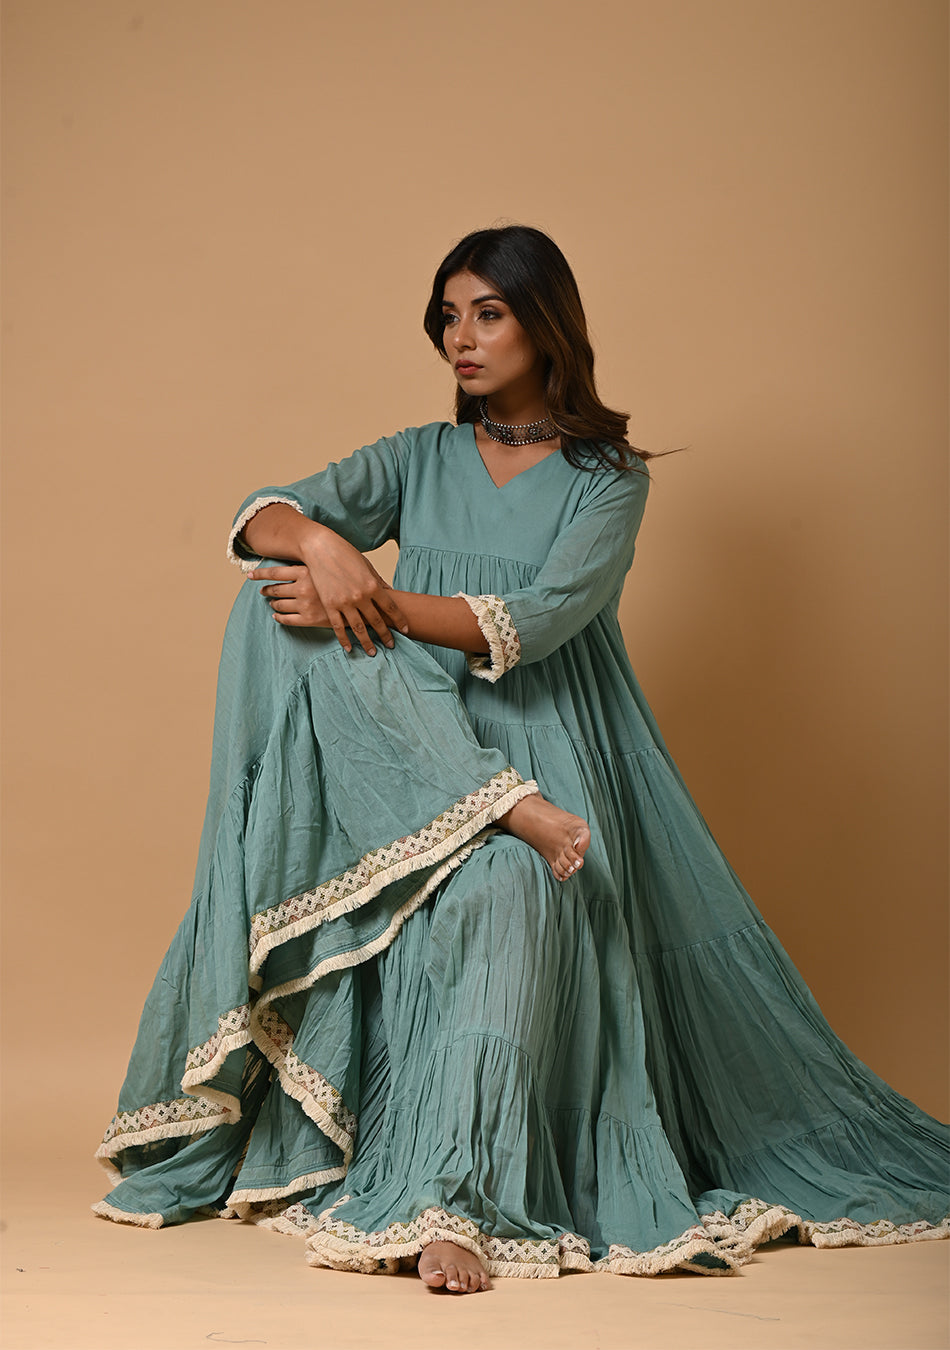 Sharara Suit, Indian Tunic Top, Salwar for Woman, Bridesmaid Dress, Ethnic  Kurti, Wedding Outfit, Punjabi Dress, Shalwar Kameez, Bridal Suit - Etsy